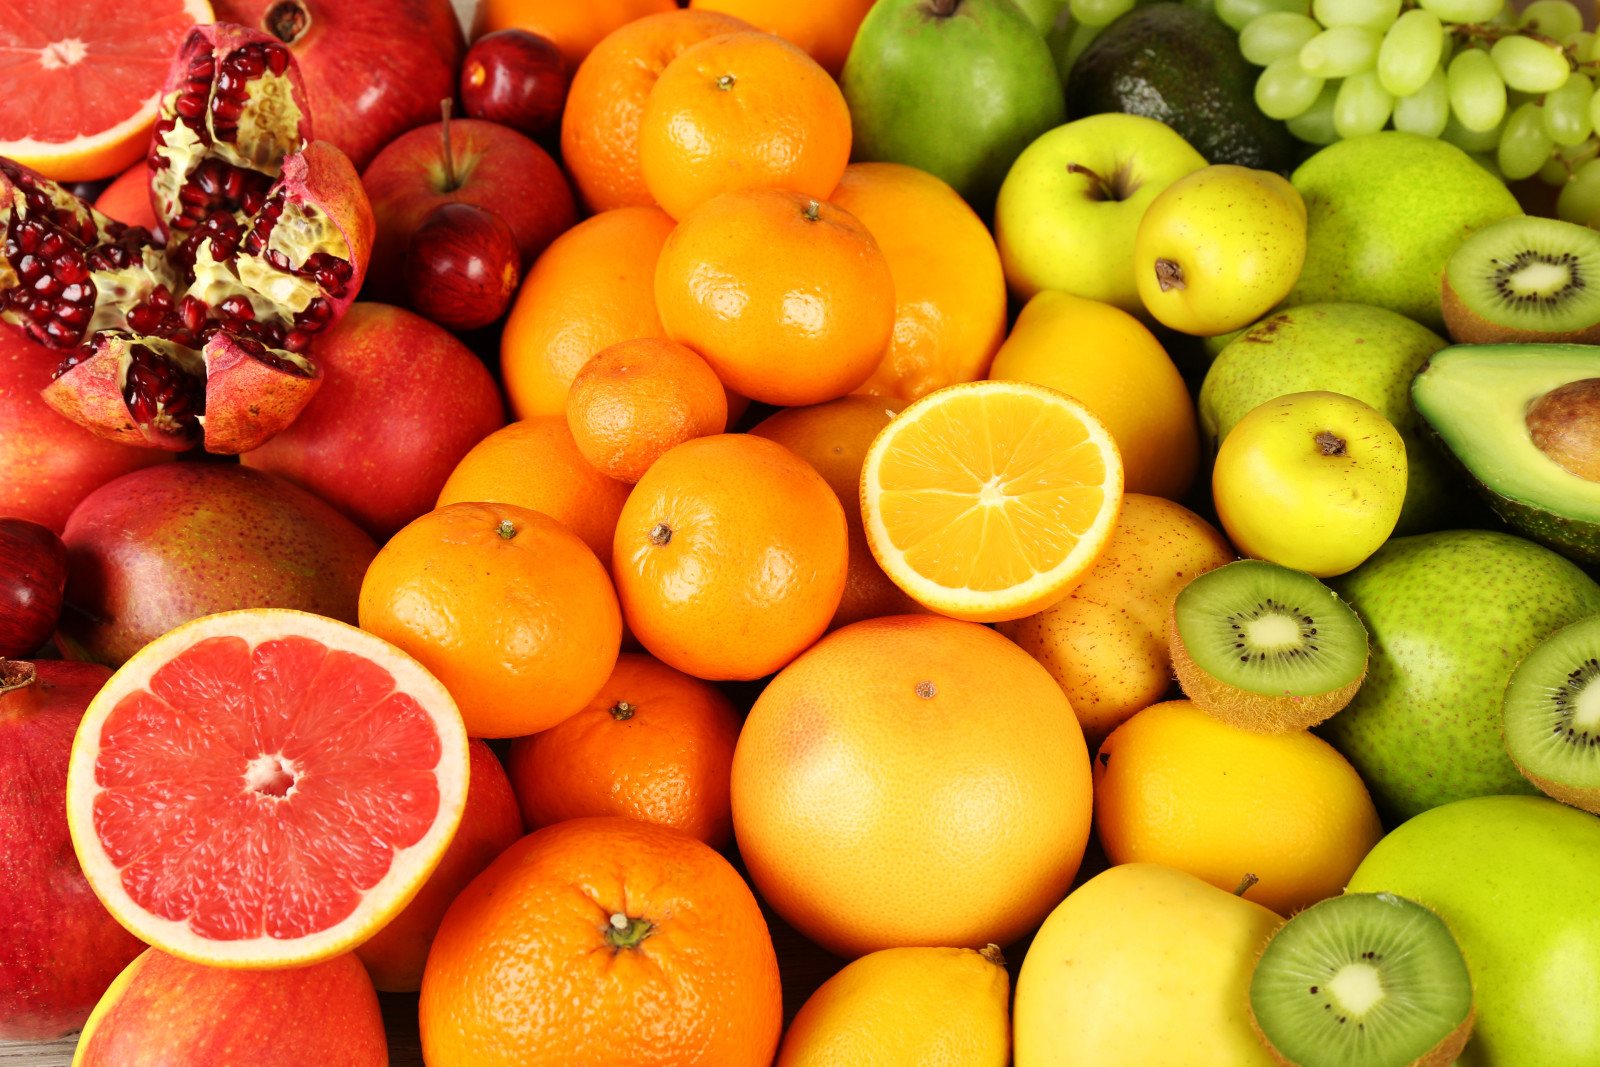 장과, 신선한, 오렌지, 사과, 키위, 과일, 그레이프 프루트, 과일